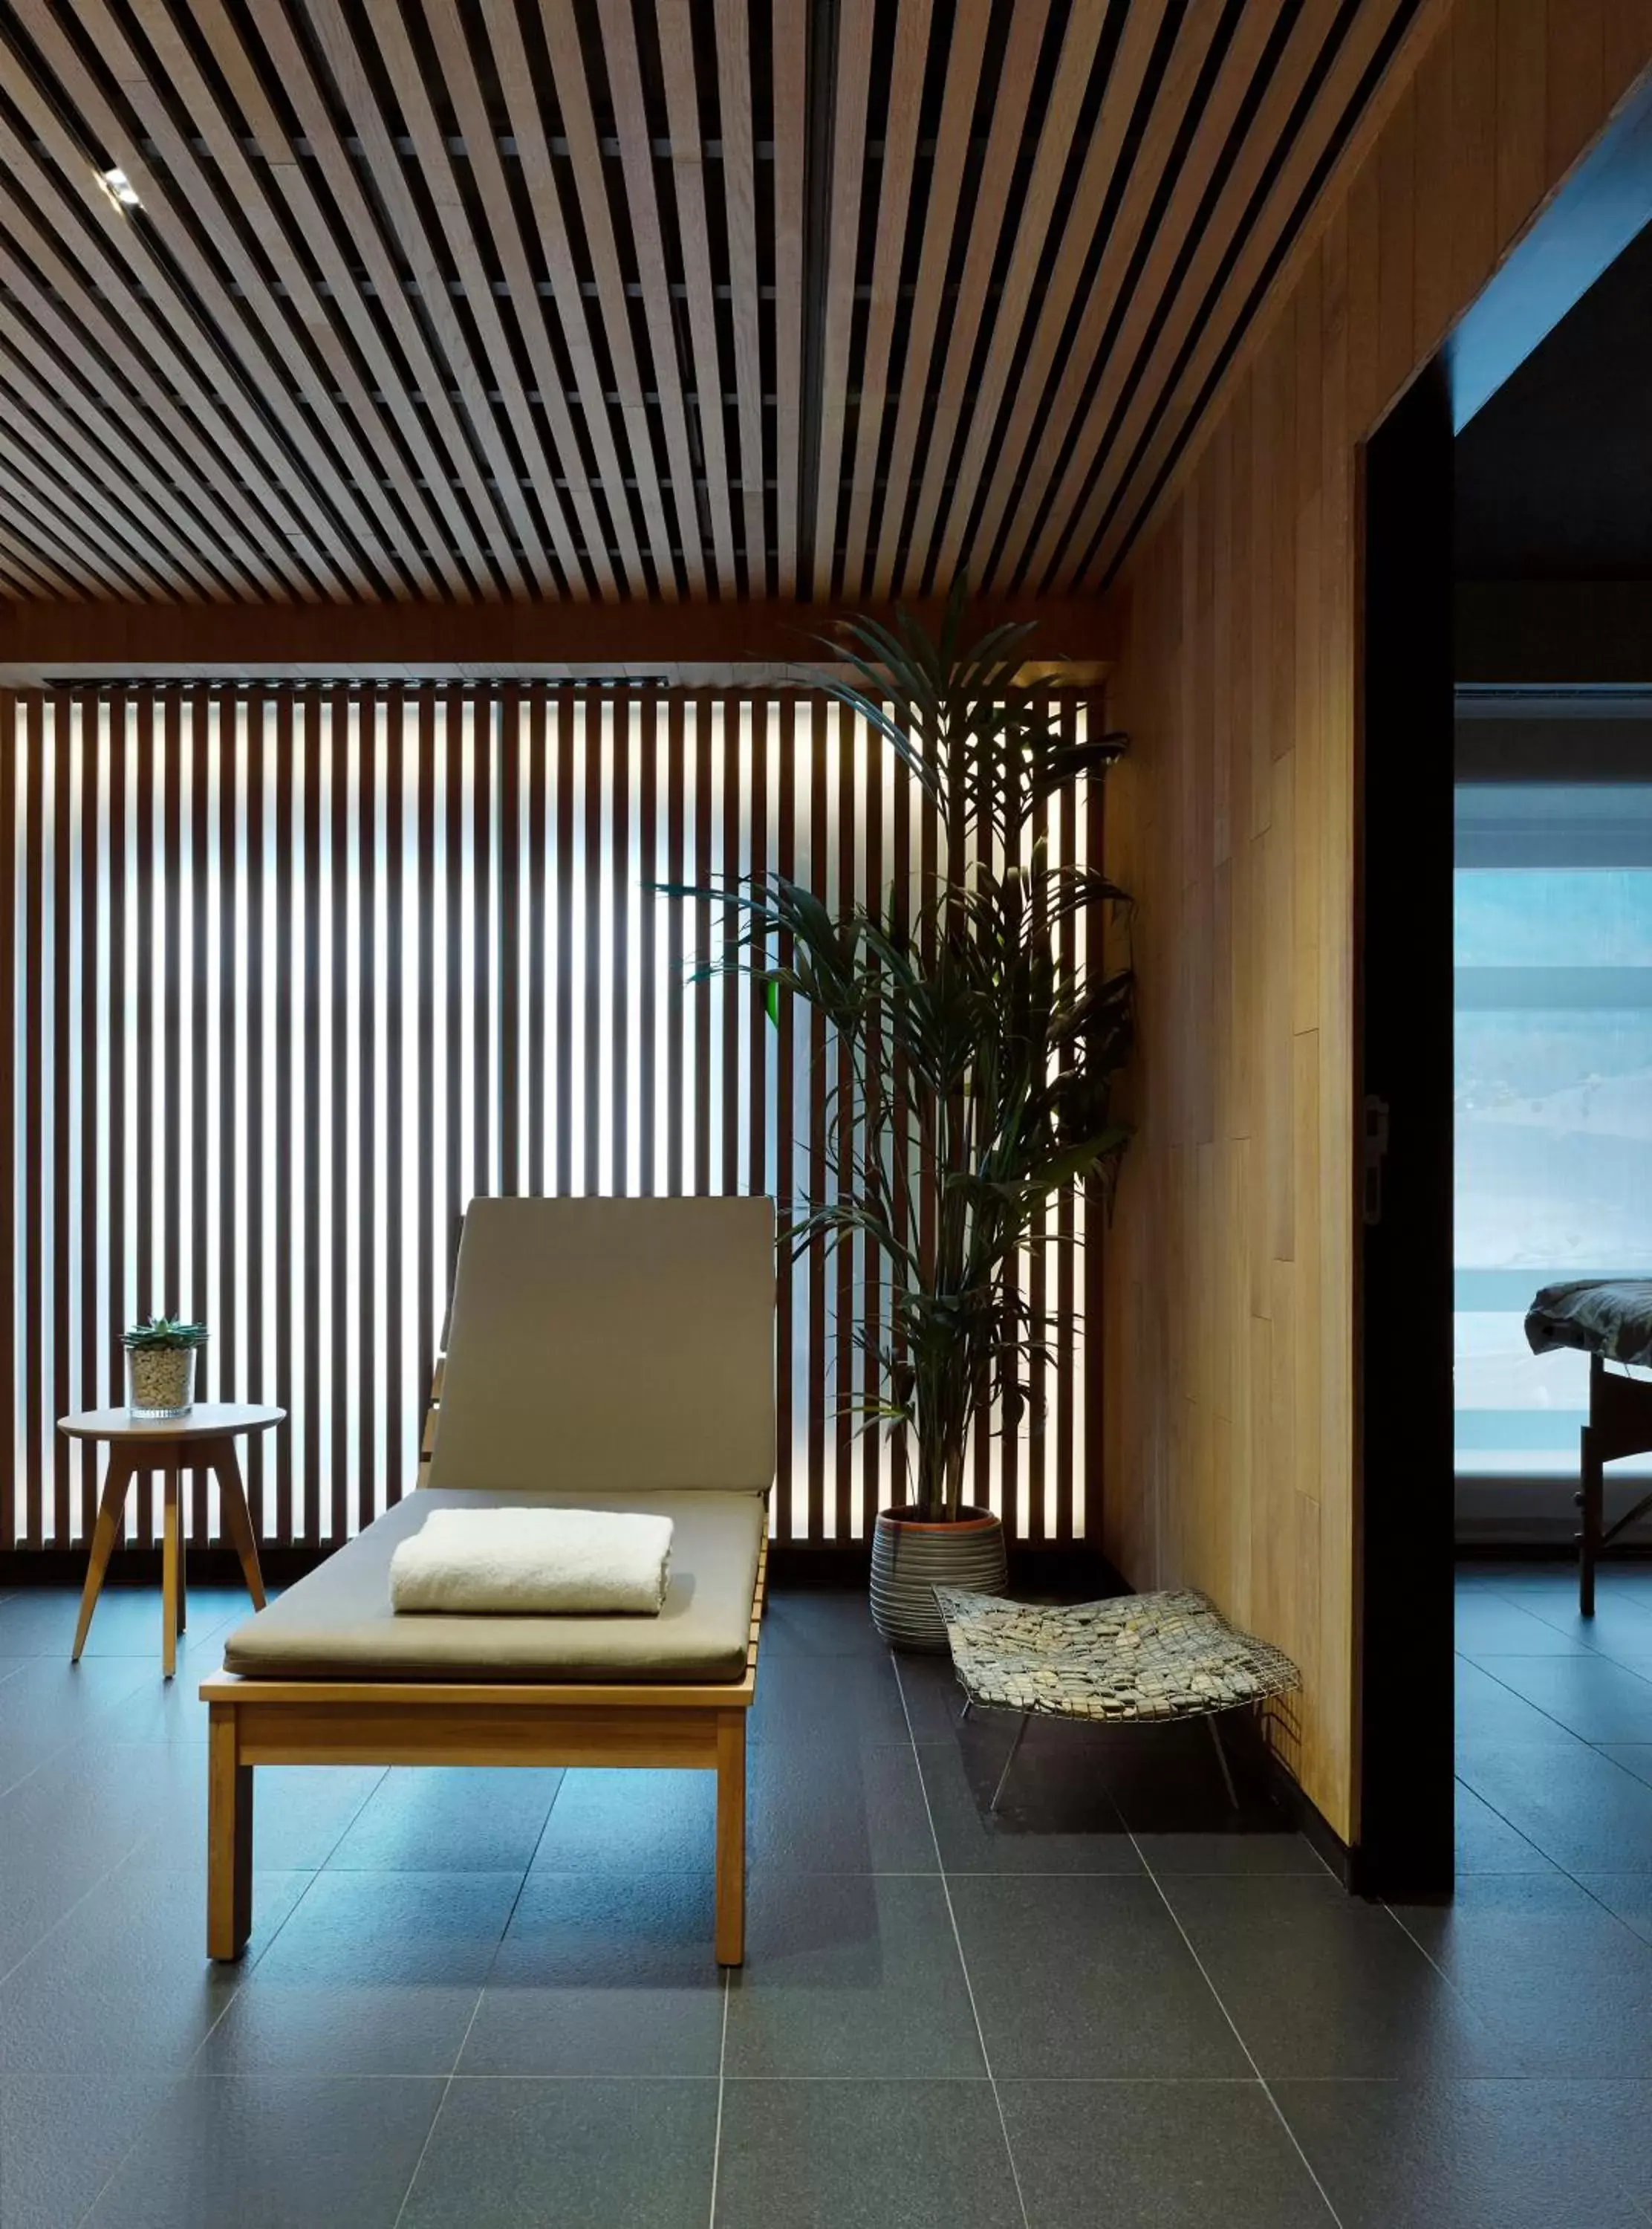 Massage, Seating Area in Gran Hotel Domine Bilbao